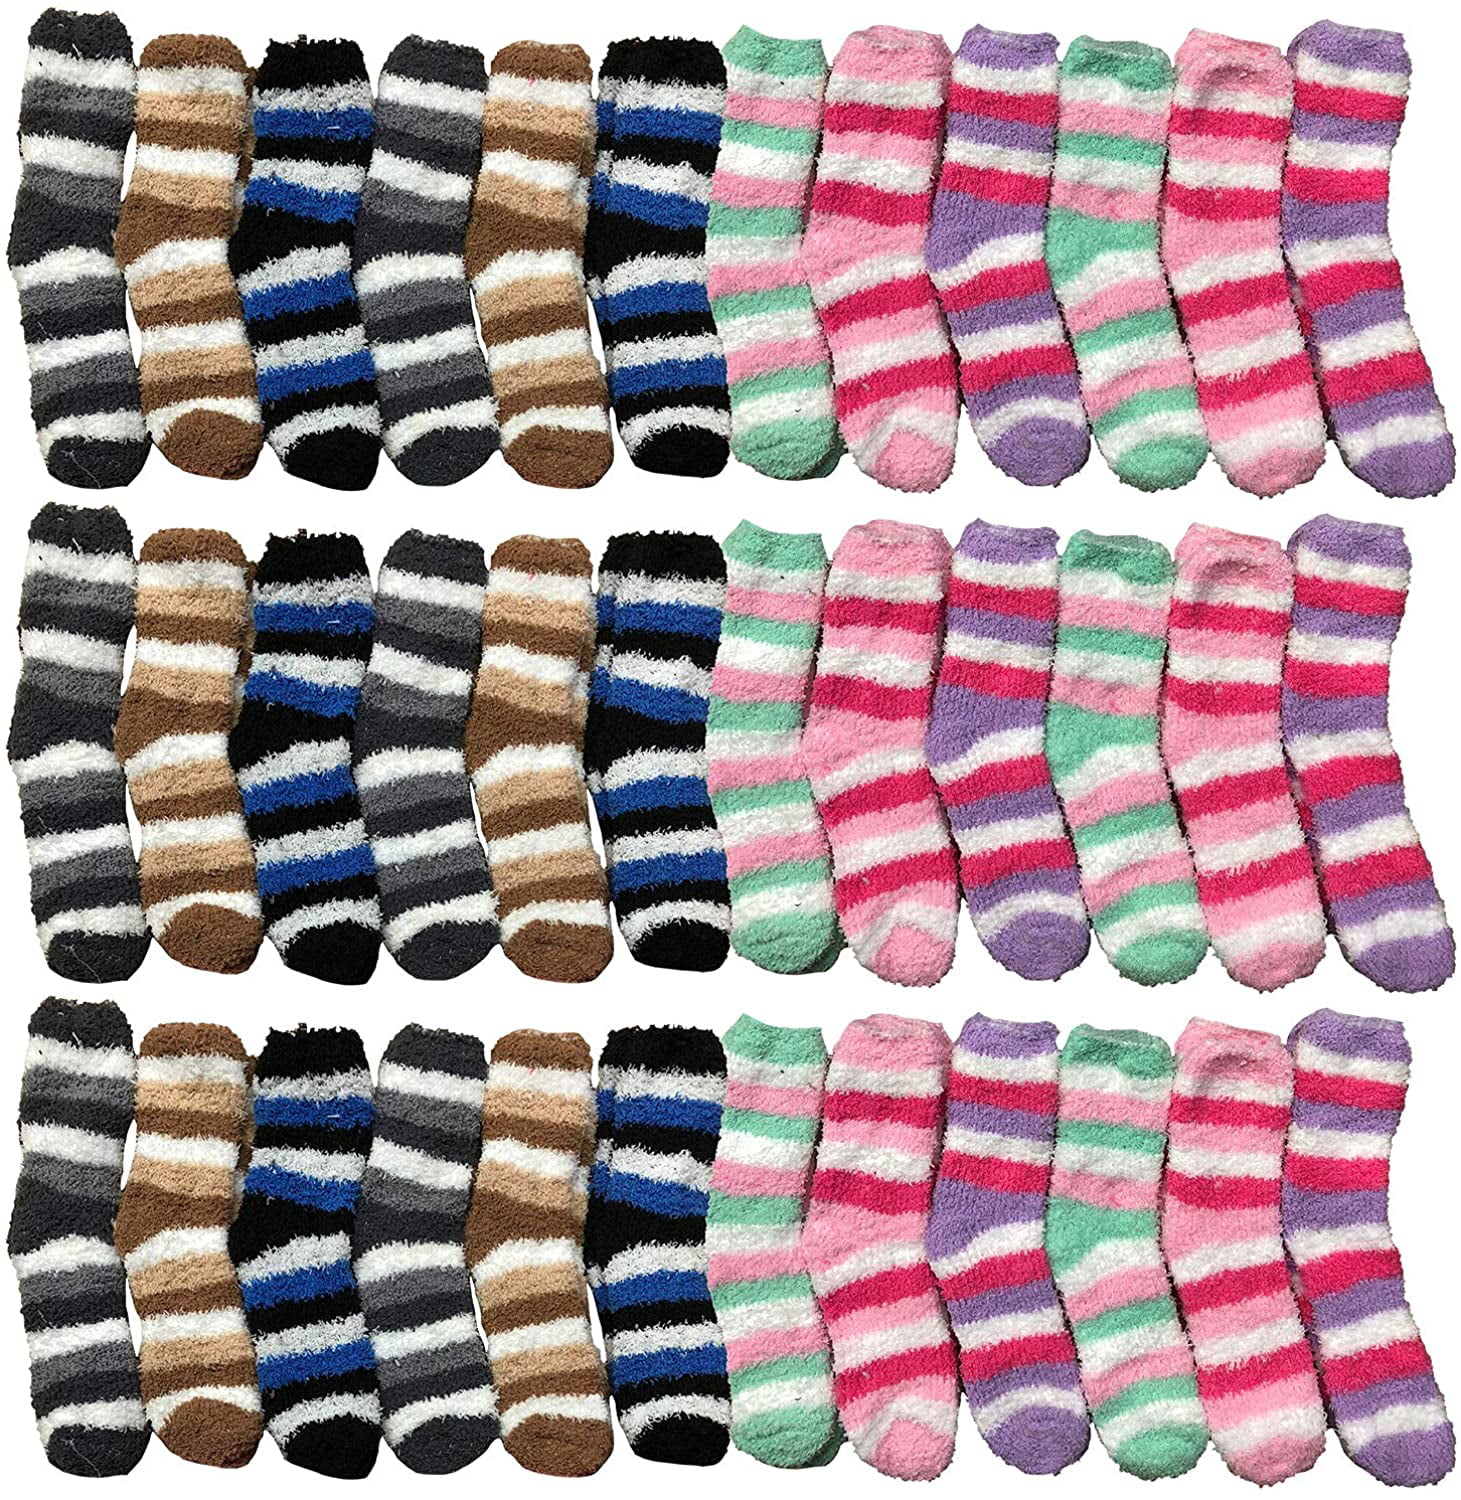 Kids Fuzzy Socks Colorful Purple Stripes Soft & Cozy